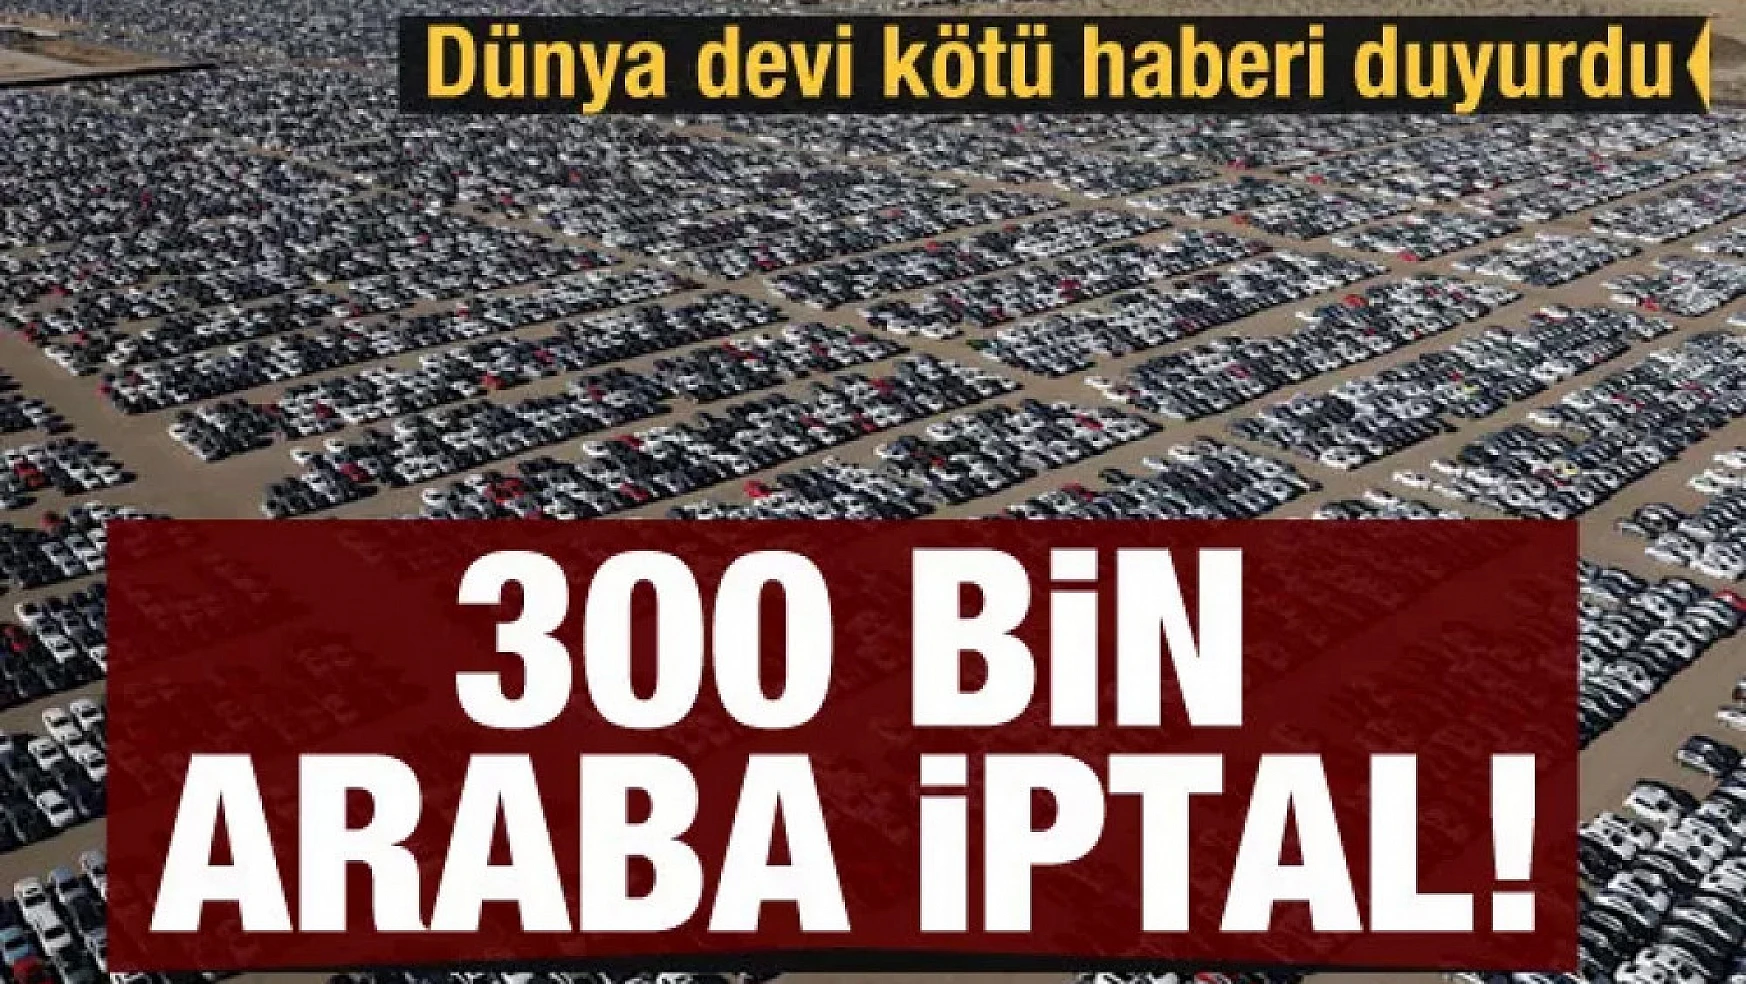 Otomotiv devi kötü haberi verdi: 300 bin araba iptal!